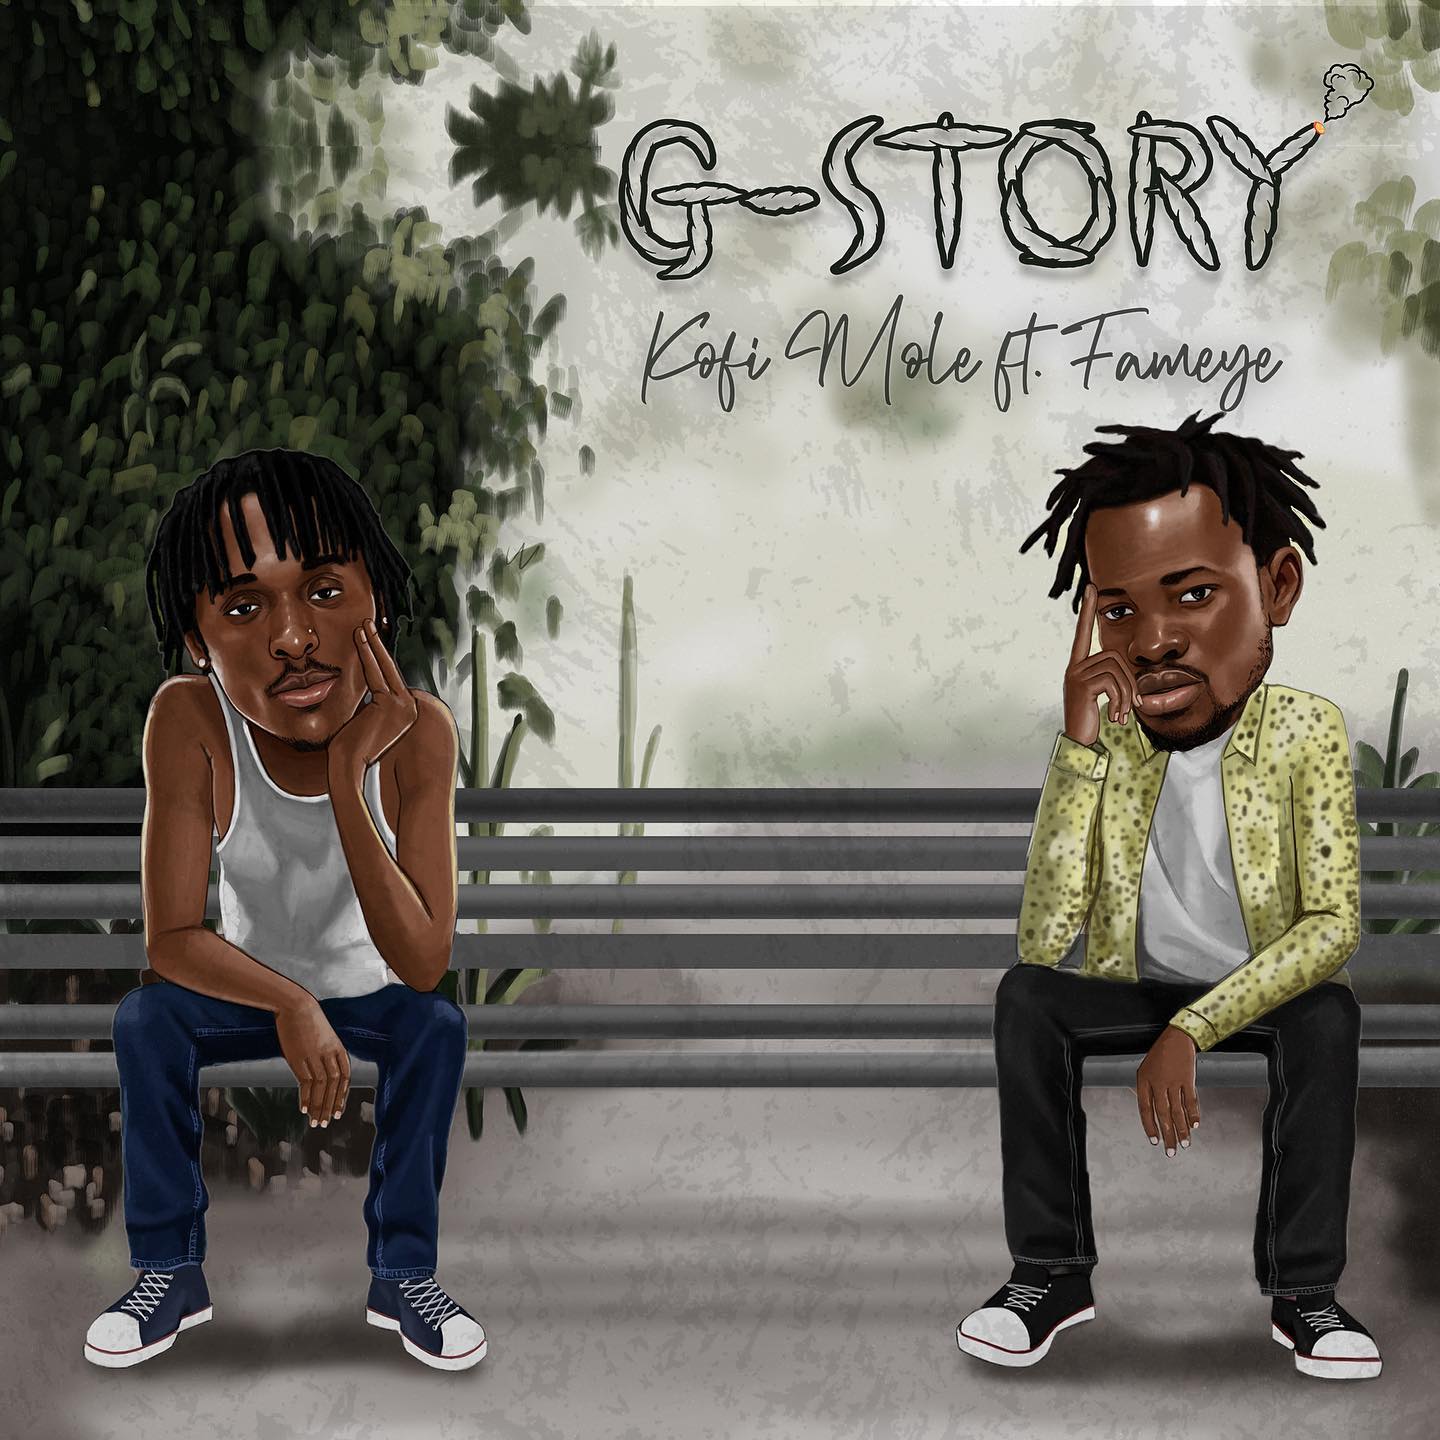 Kofi Mole - G-Story Ft Fameye 21